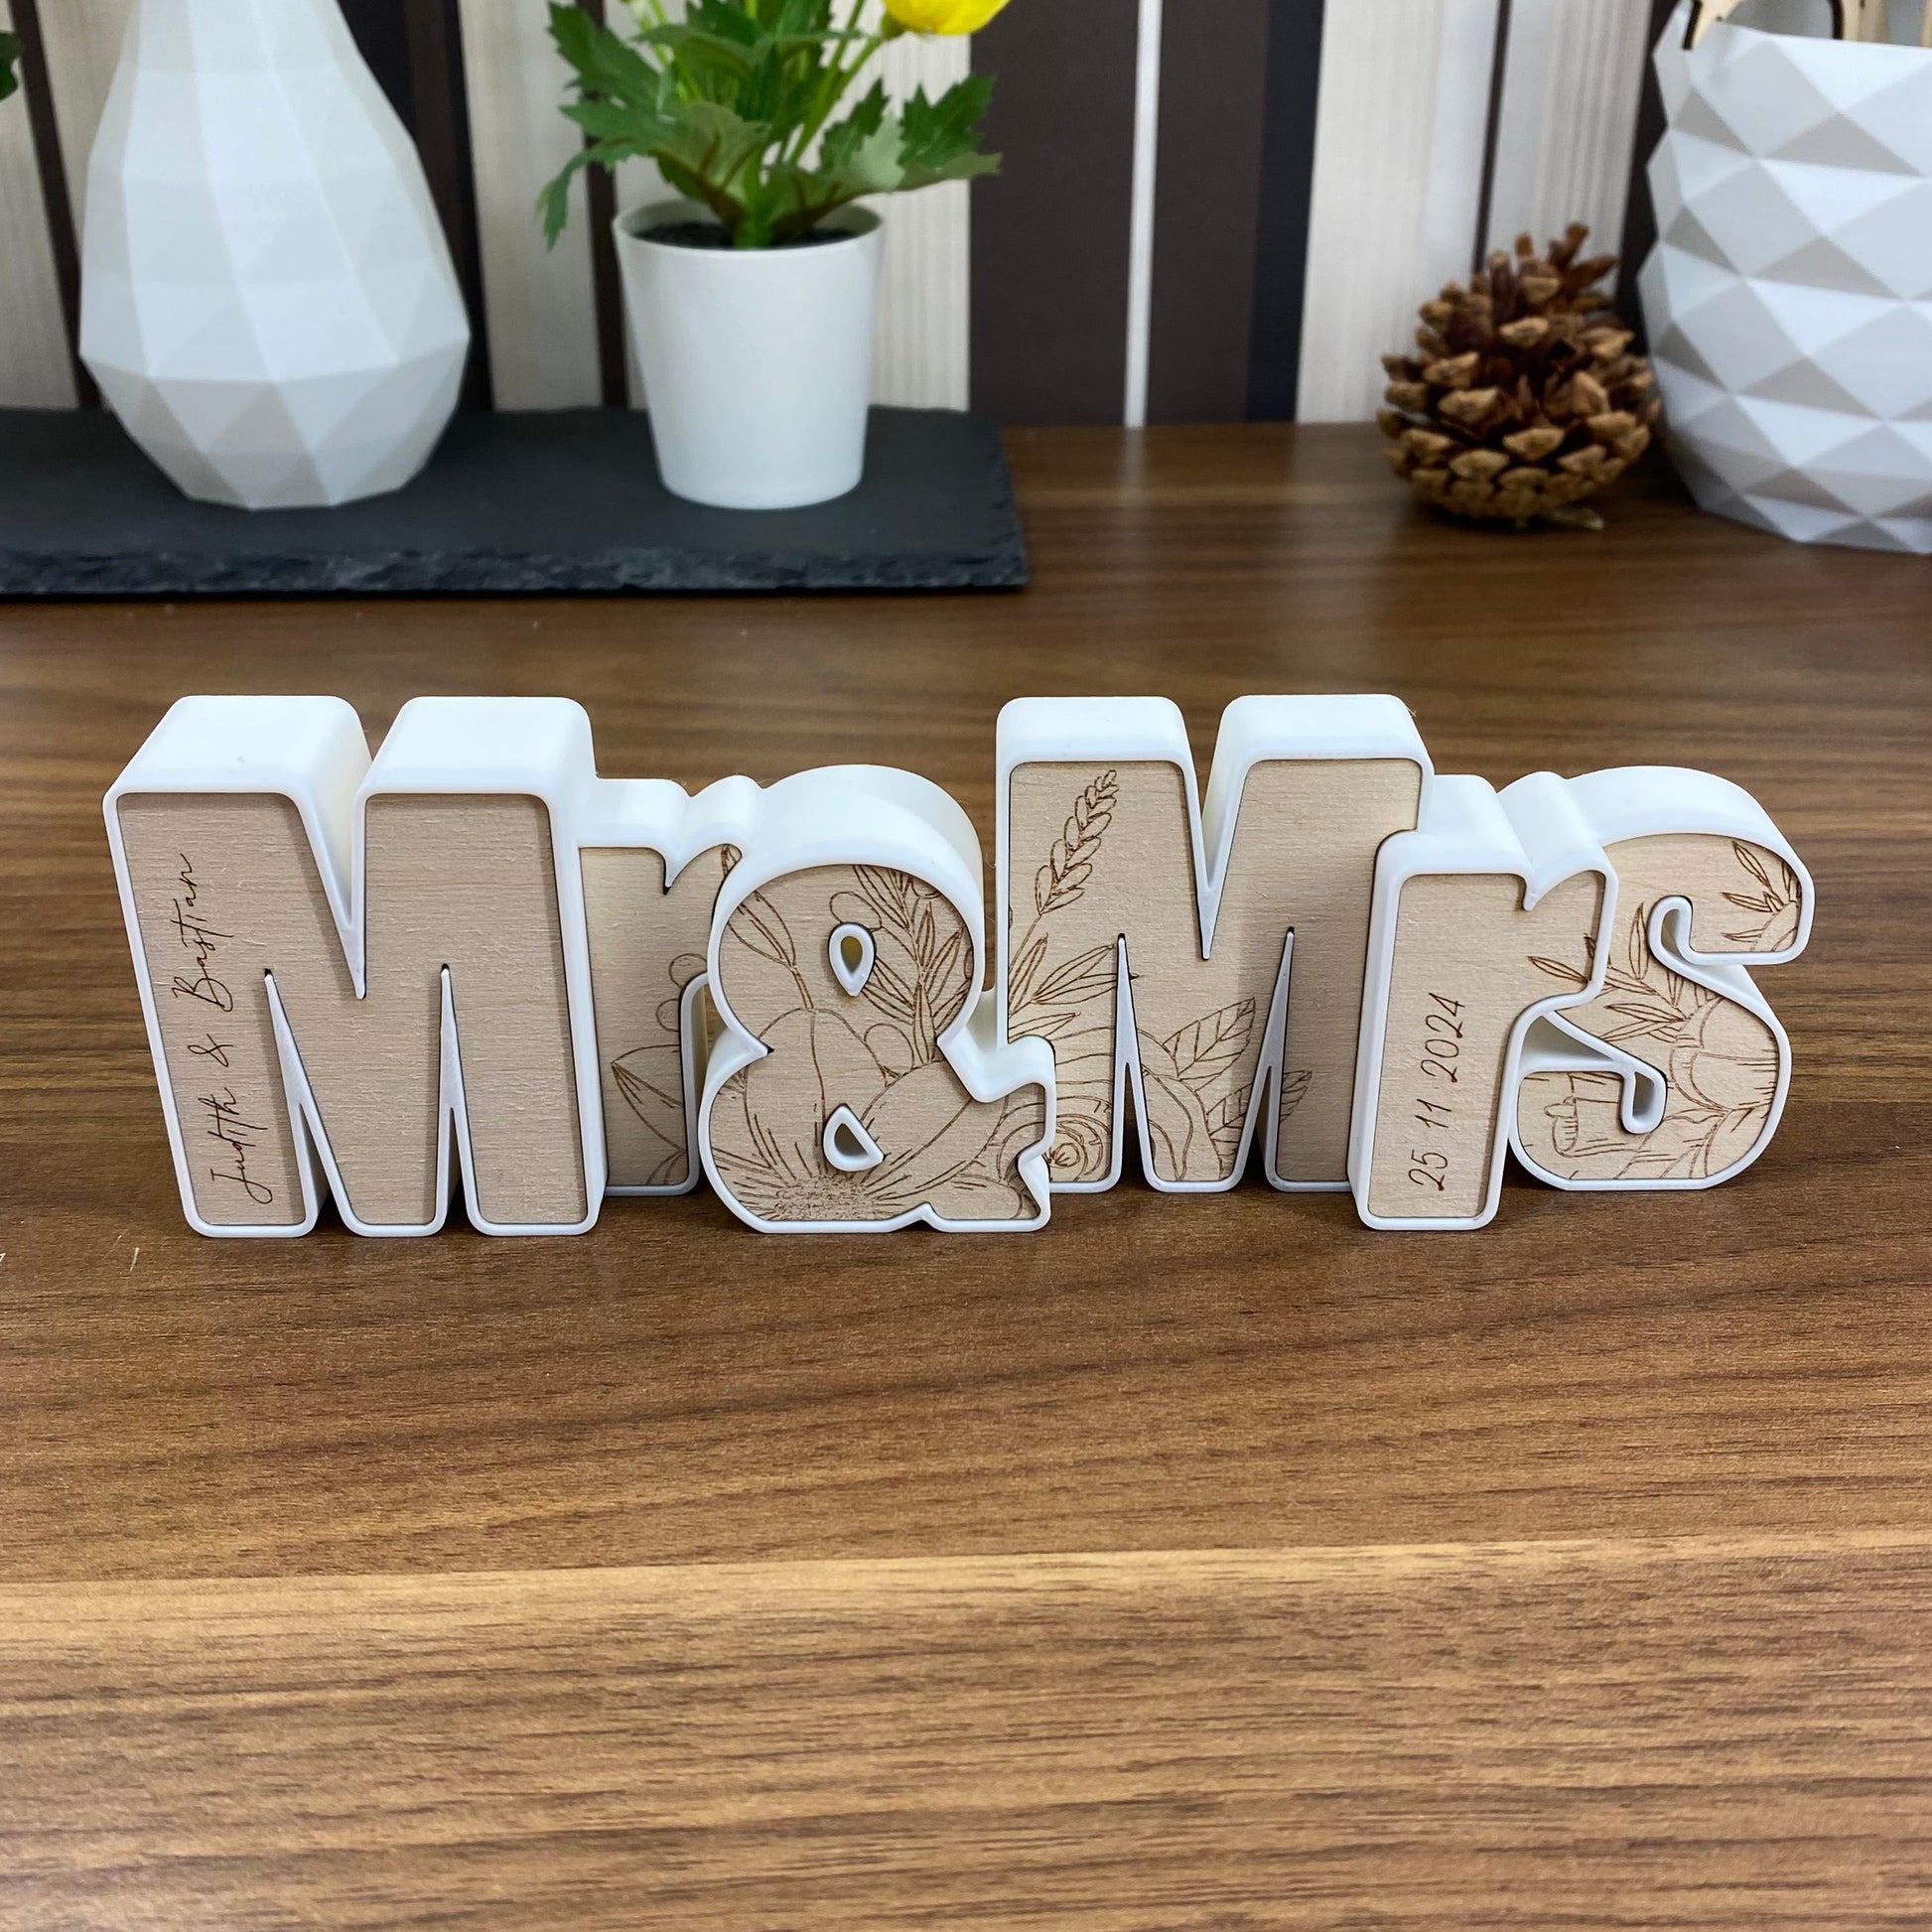 Hochzeitsgeschenk "Mr & Mrs" personalisiert, Holz Gravur mit Datum und Namen - Deko Andenken